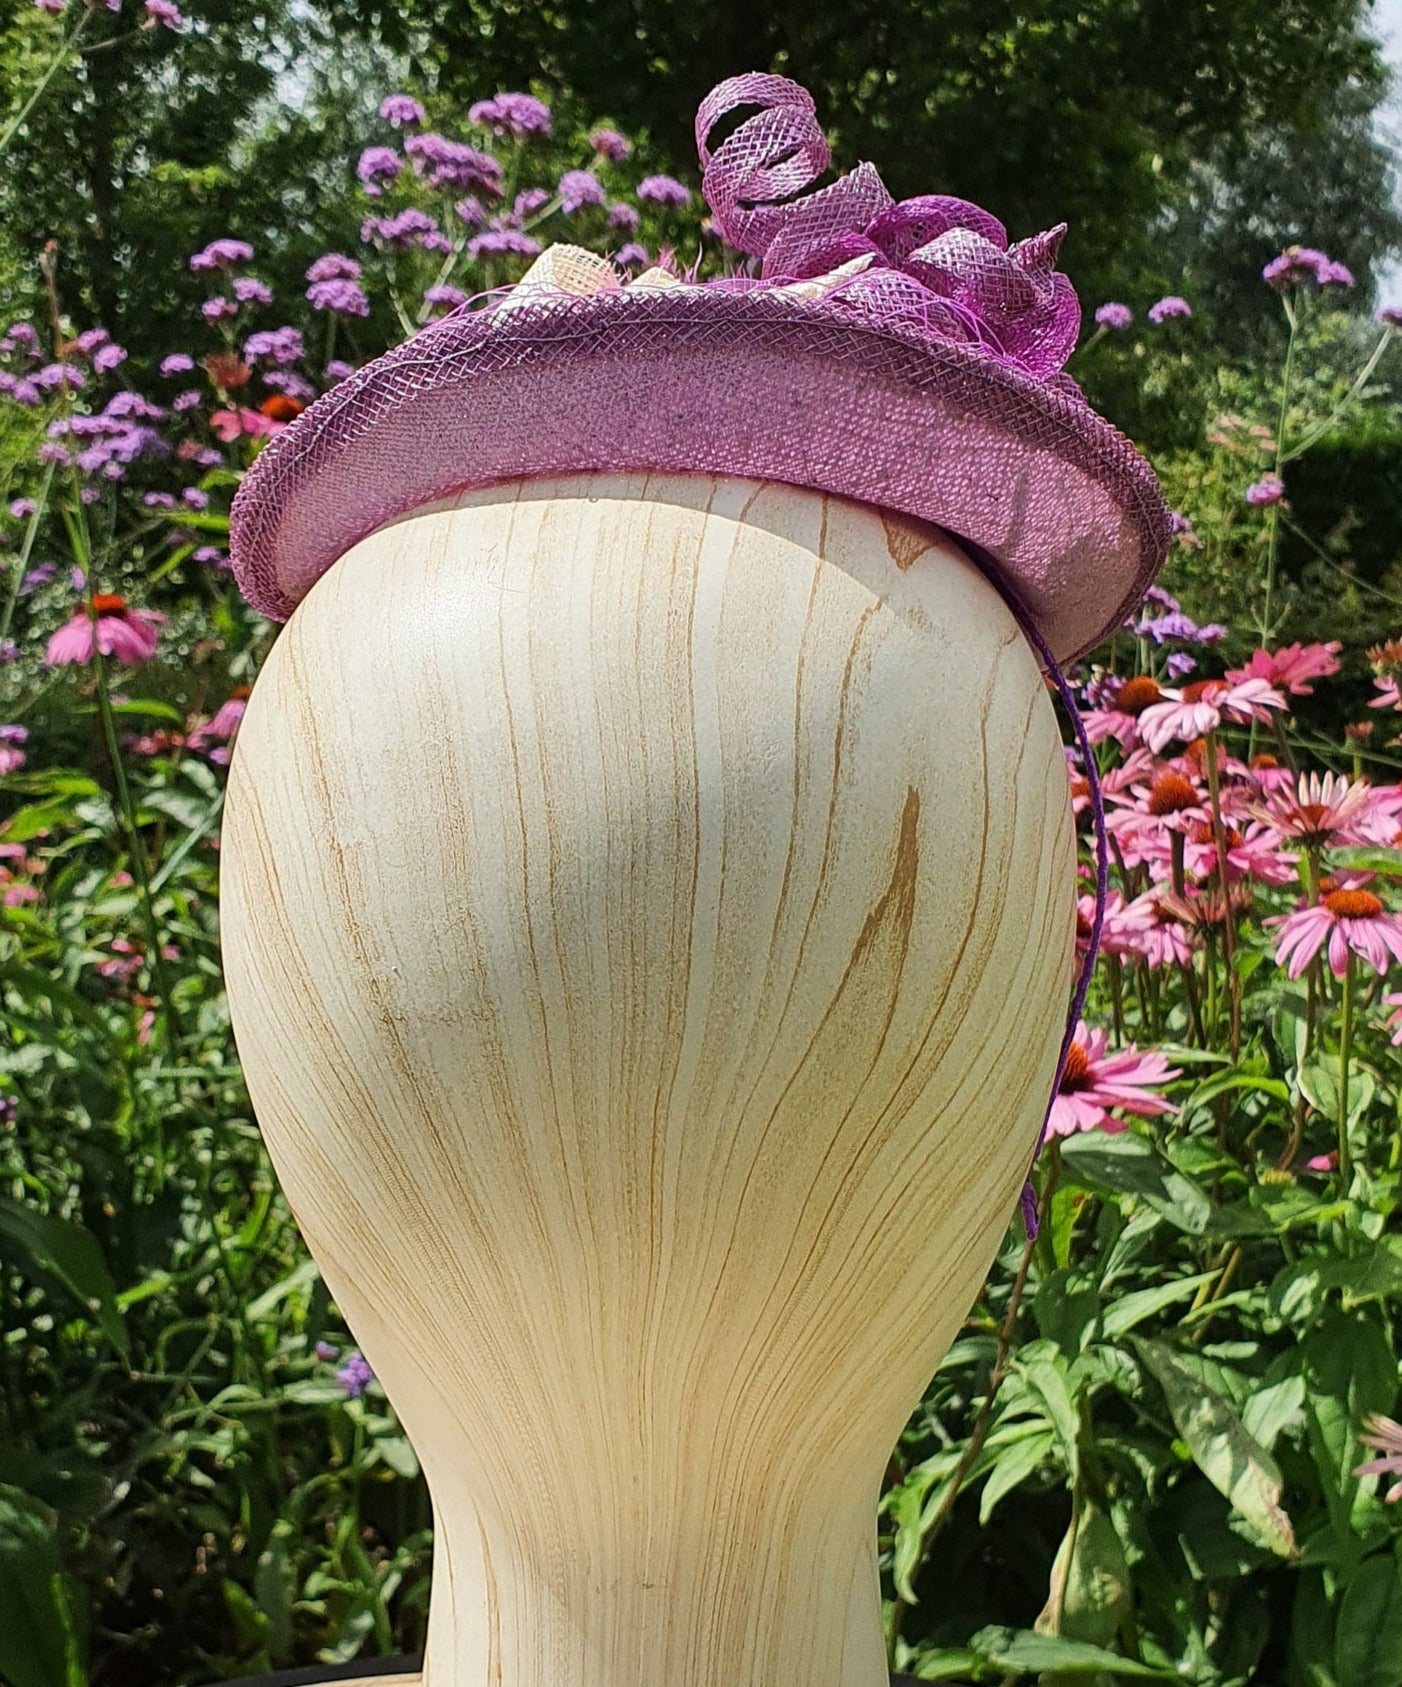 Handgemaakte paarse ovale fascinator van sinamay met roze en paarse veren en striken